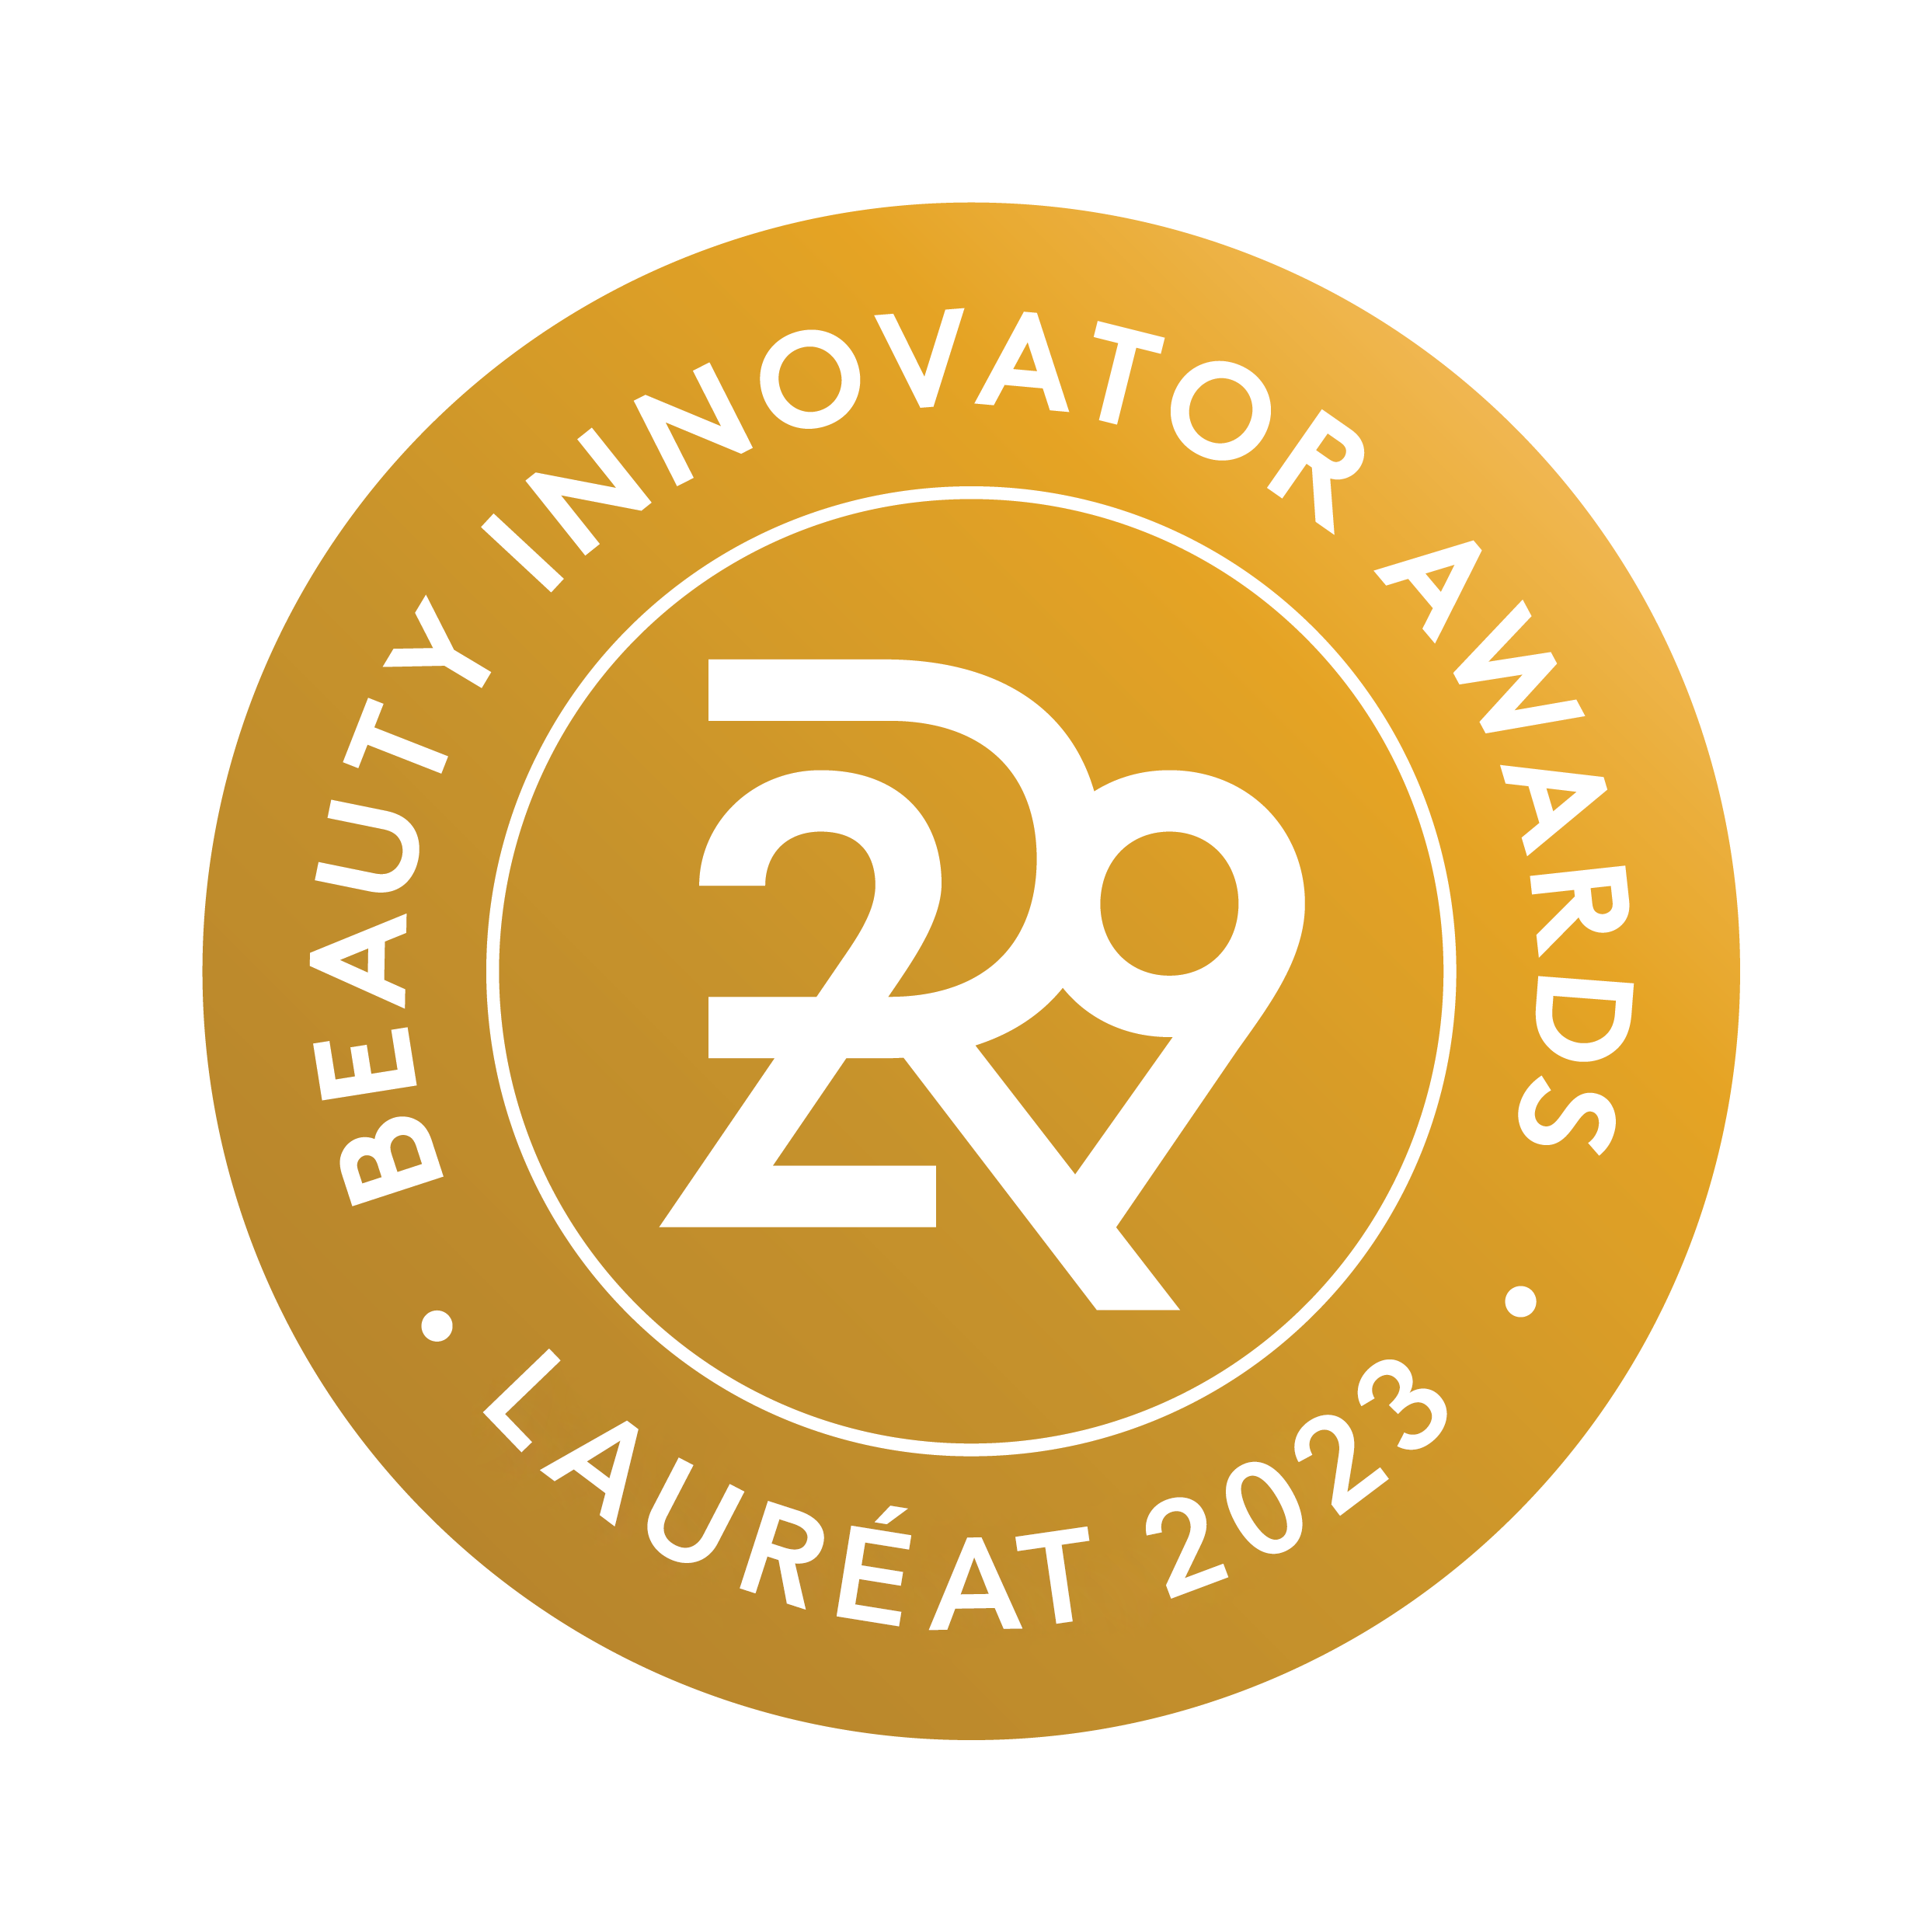 R29 Beauty Award